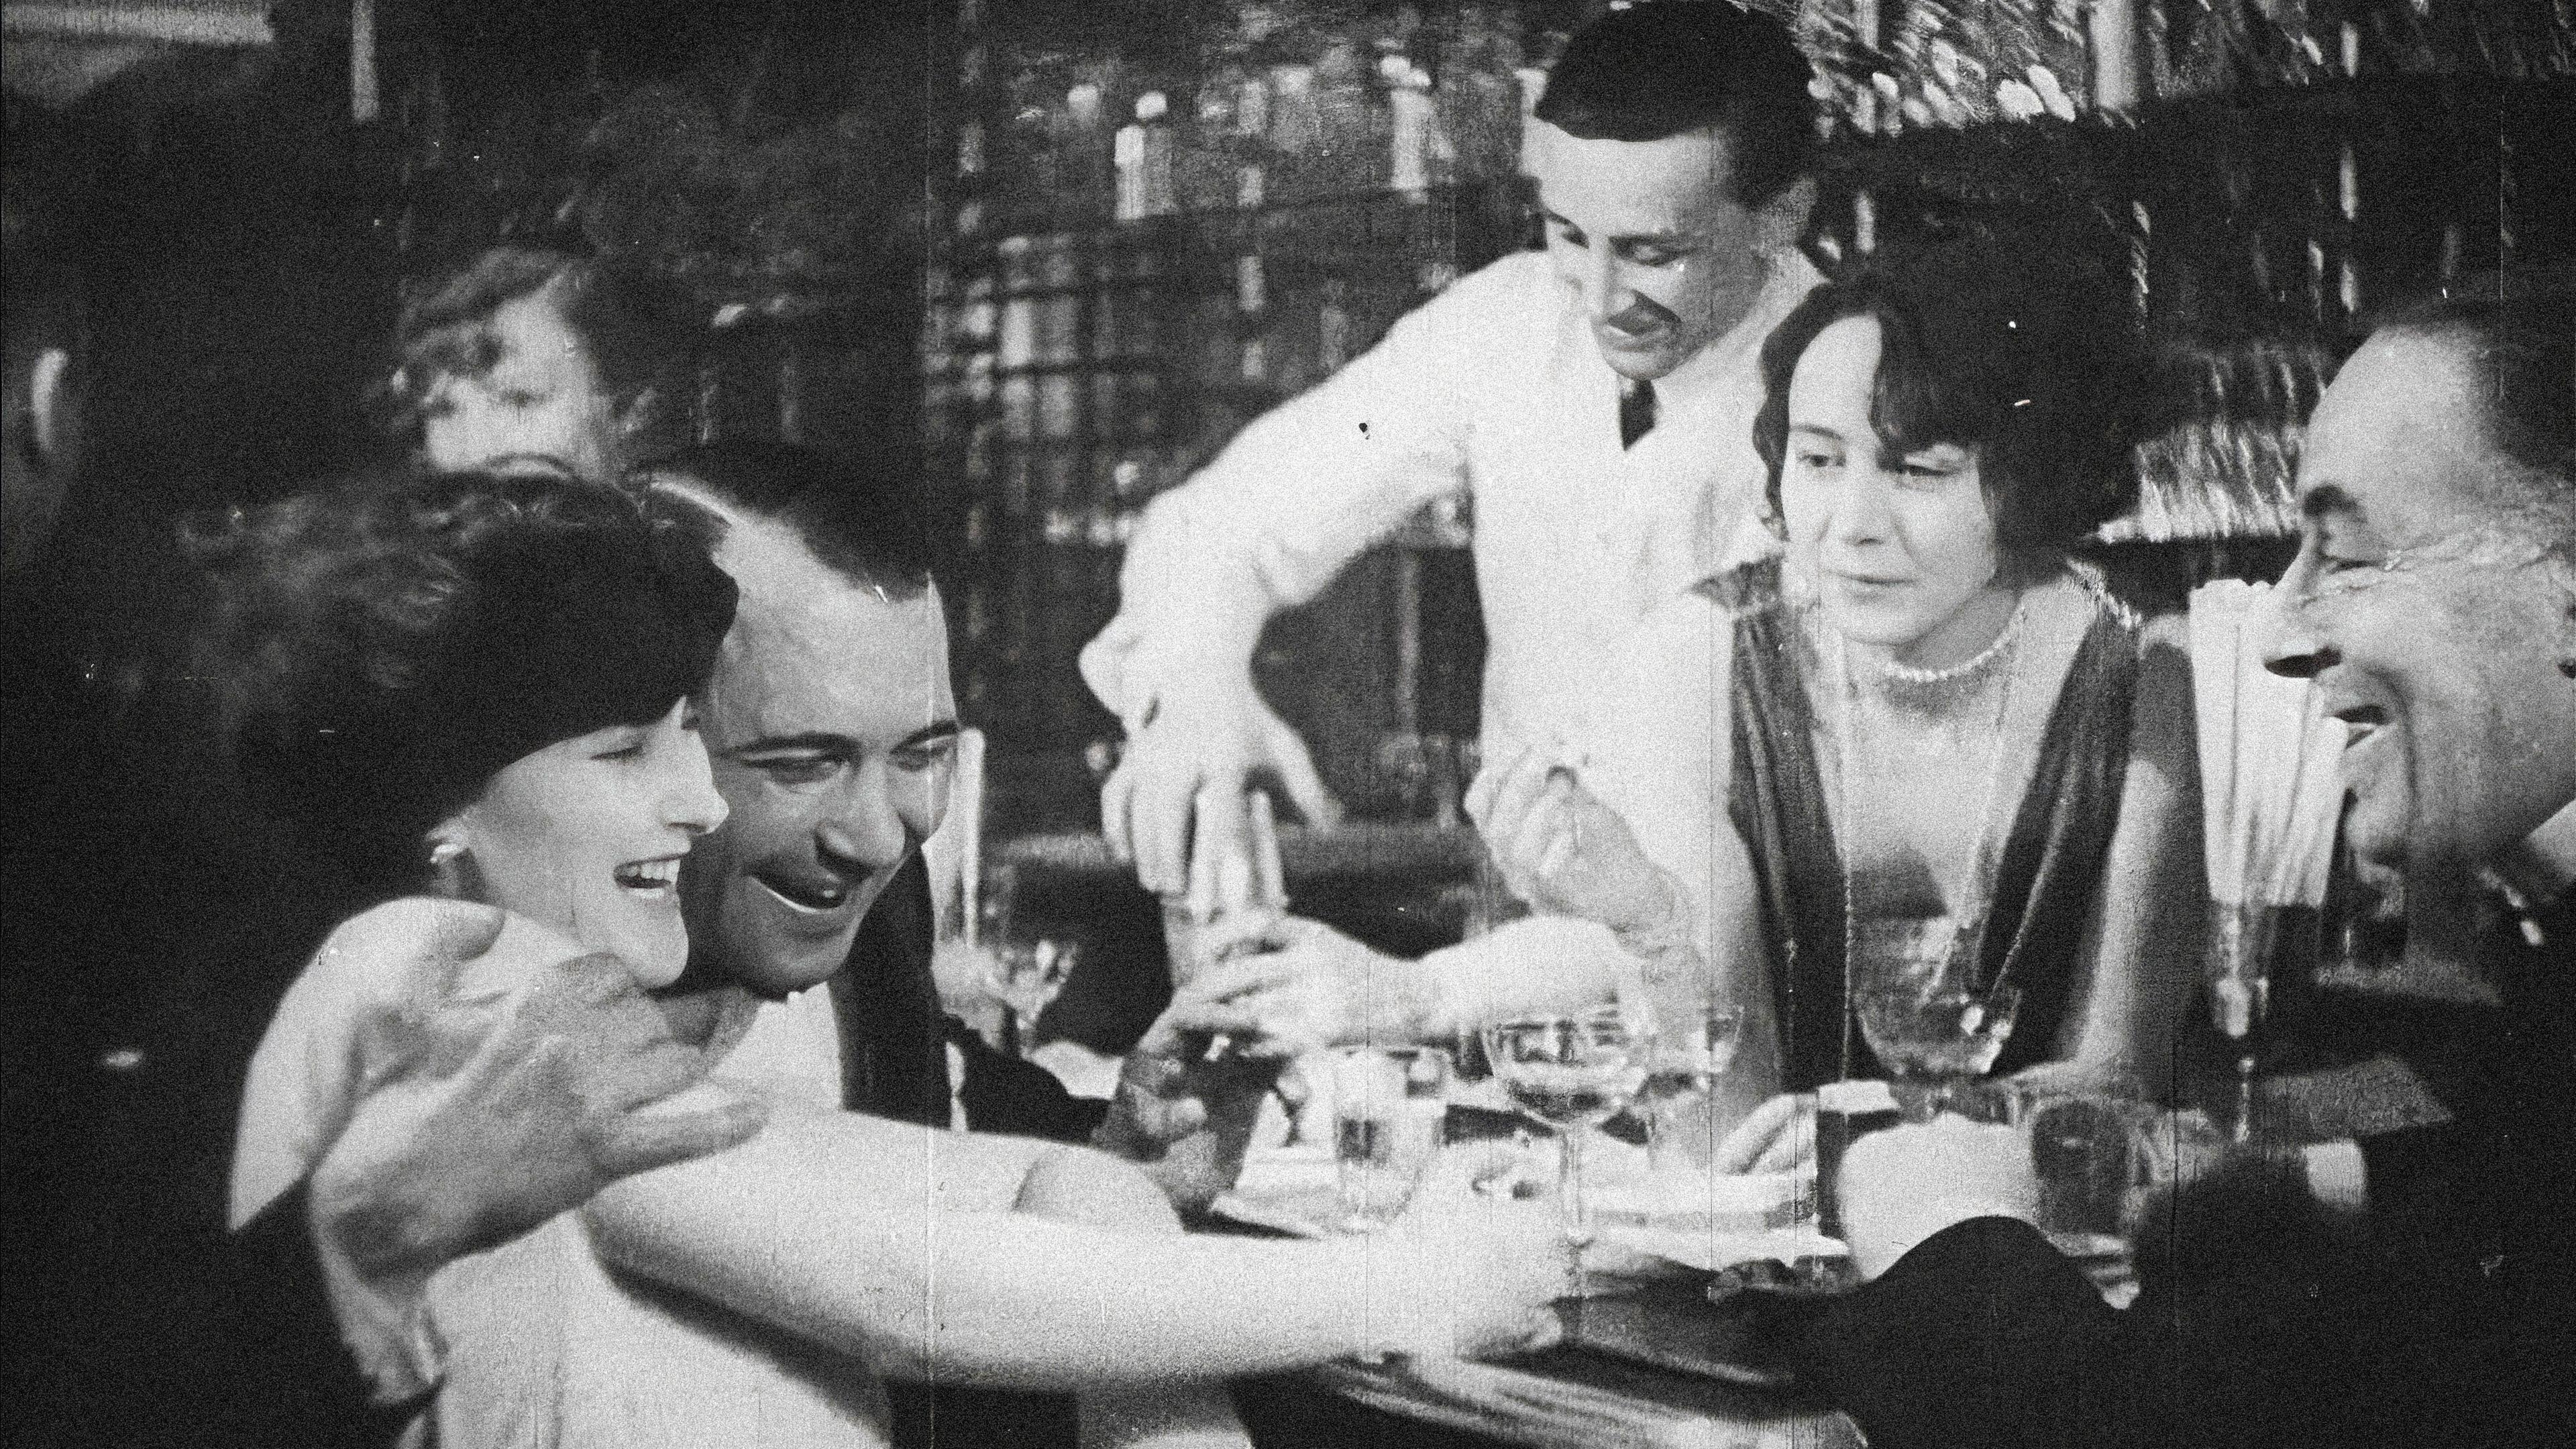 An einer Bar sitzt links im Bild ein Mann, der seinen Arm um eine Frau legt. Sie lacht. Rechts davon sitzen ein Mann und eine Frau, die sich ebenfalls amüsieren. Im Hintergrund schenkt ein Barkeeper ein Getränk ein.